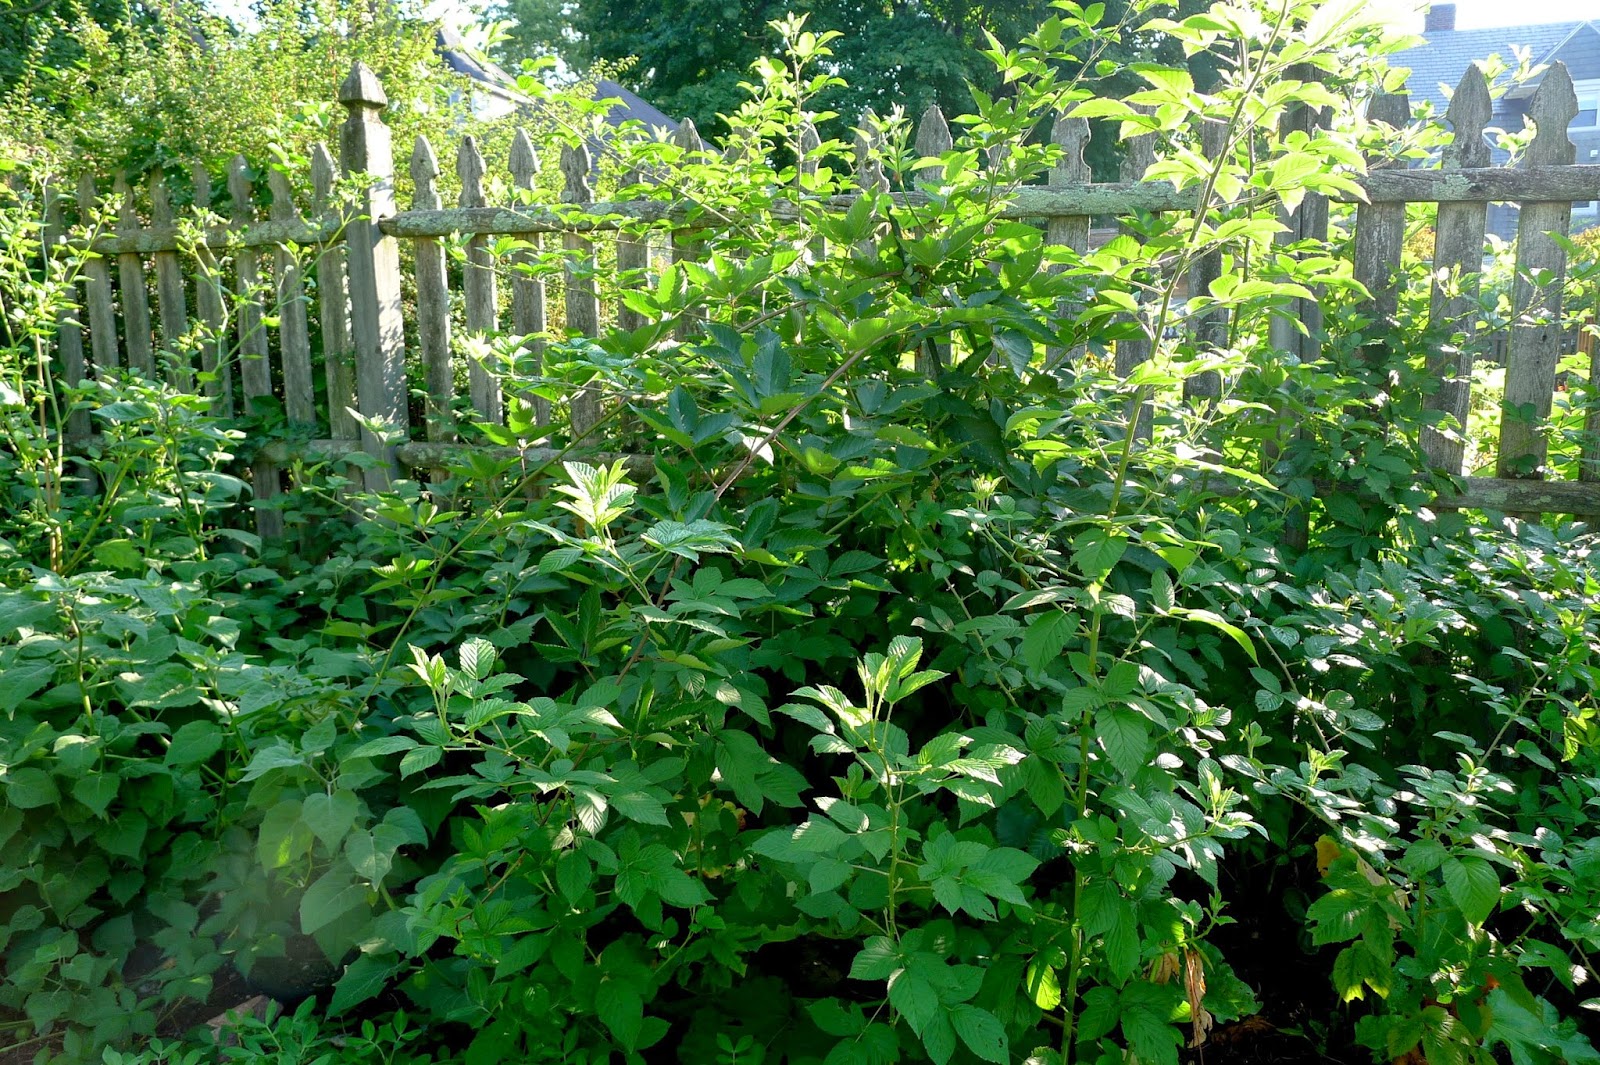 Blackberry vines